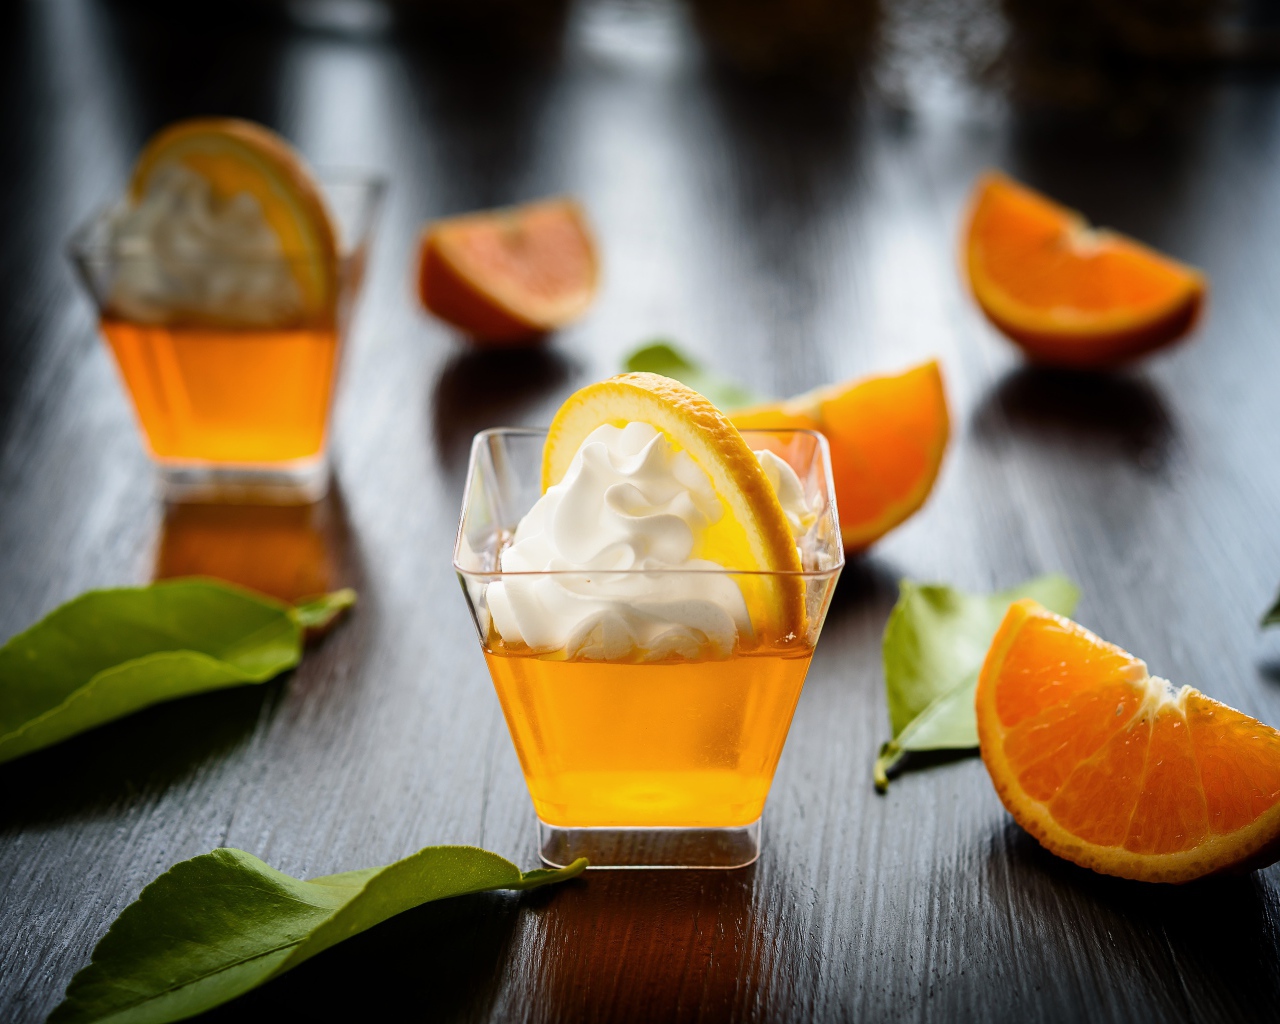 Апельсиновый коктейль со сливками на столе